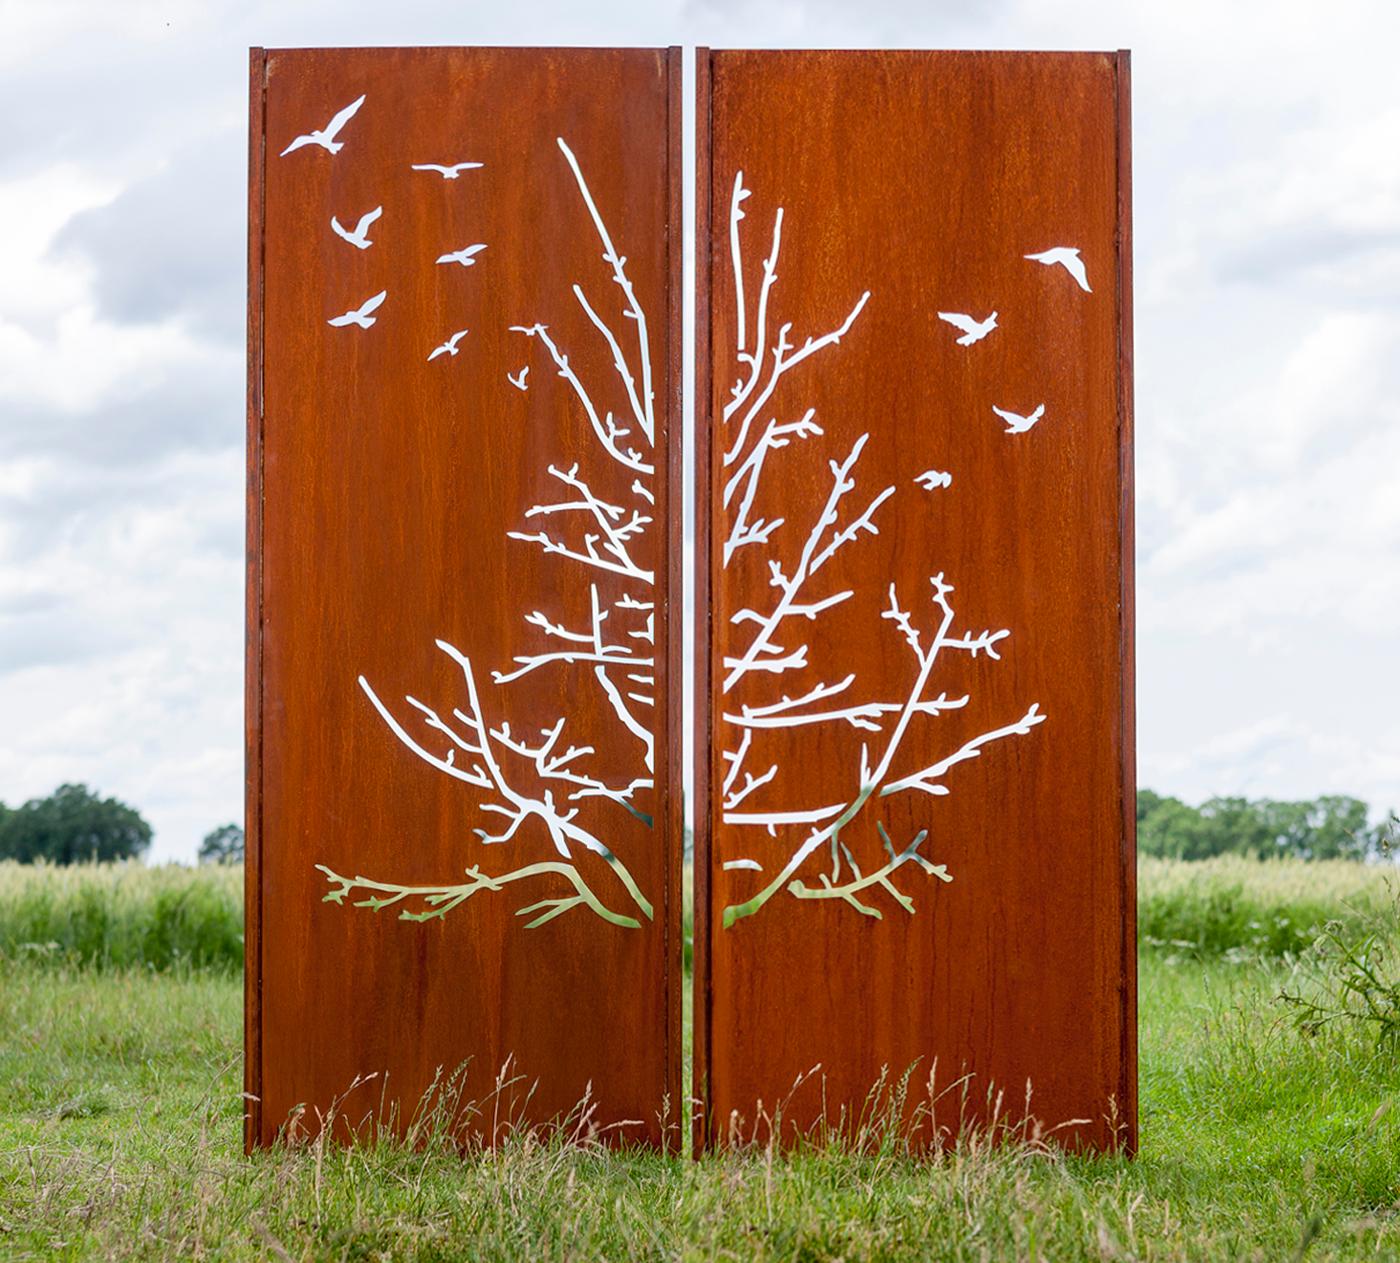 Steel Garden Wall - "Diptych Birds" - modern outdoor ornament - 150×195 cm - Sculpture by Stefan Traloc